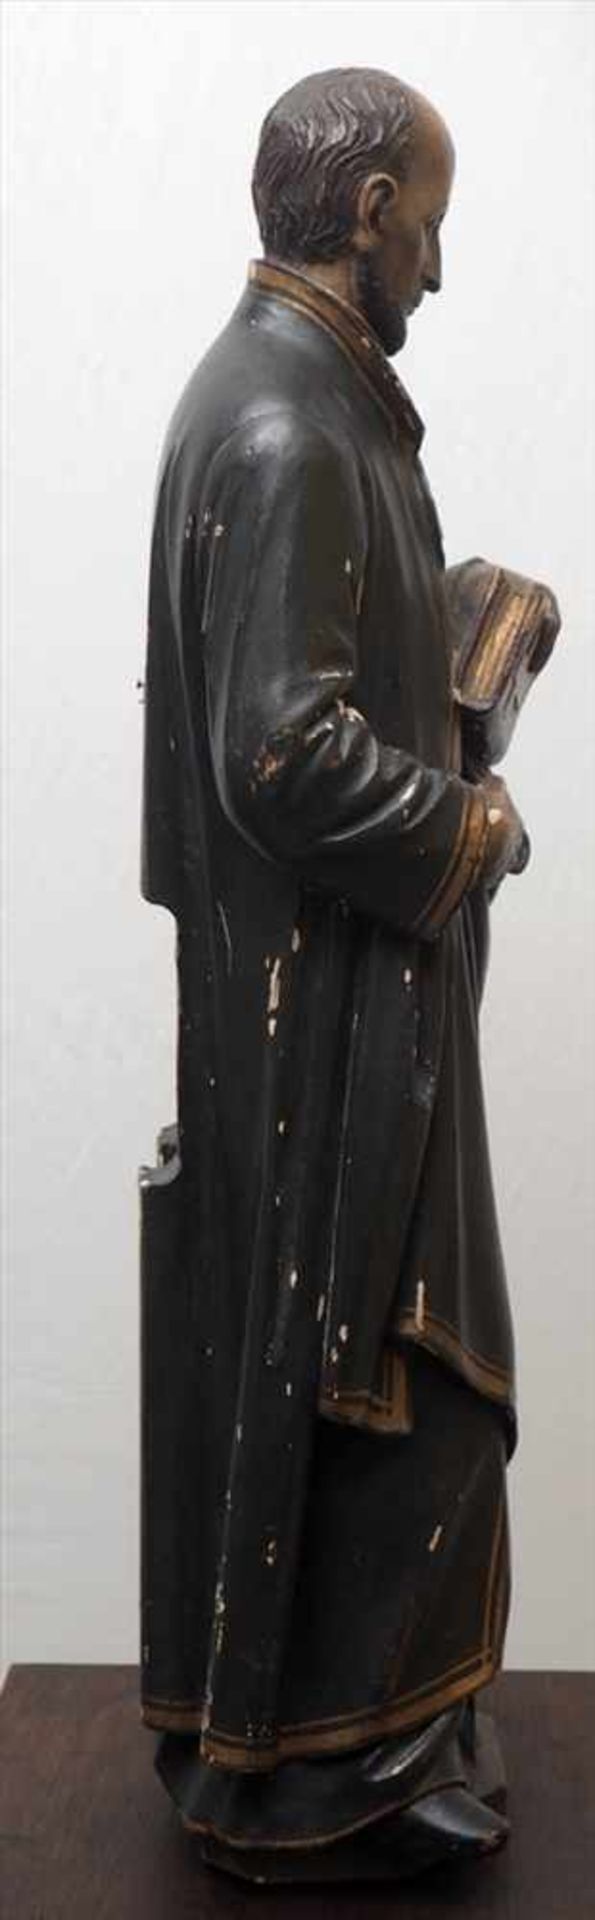 Heiligenfigur, 19.Jhdt.Hl. Ignatius von Loyola, in der linken Hand die Bibel haltend. Lindenholz, - Image 5 of 7